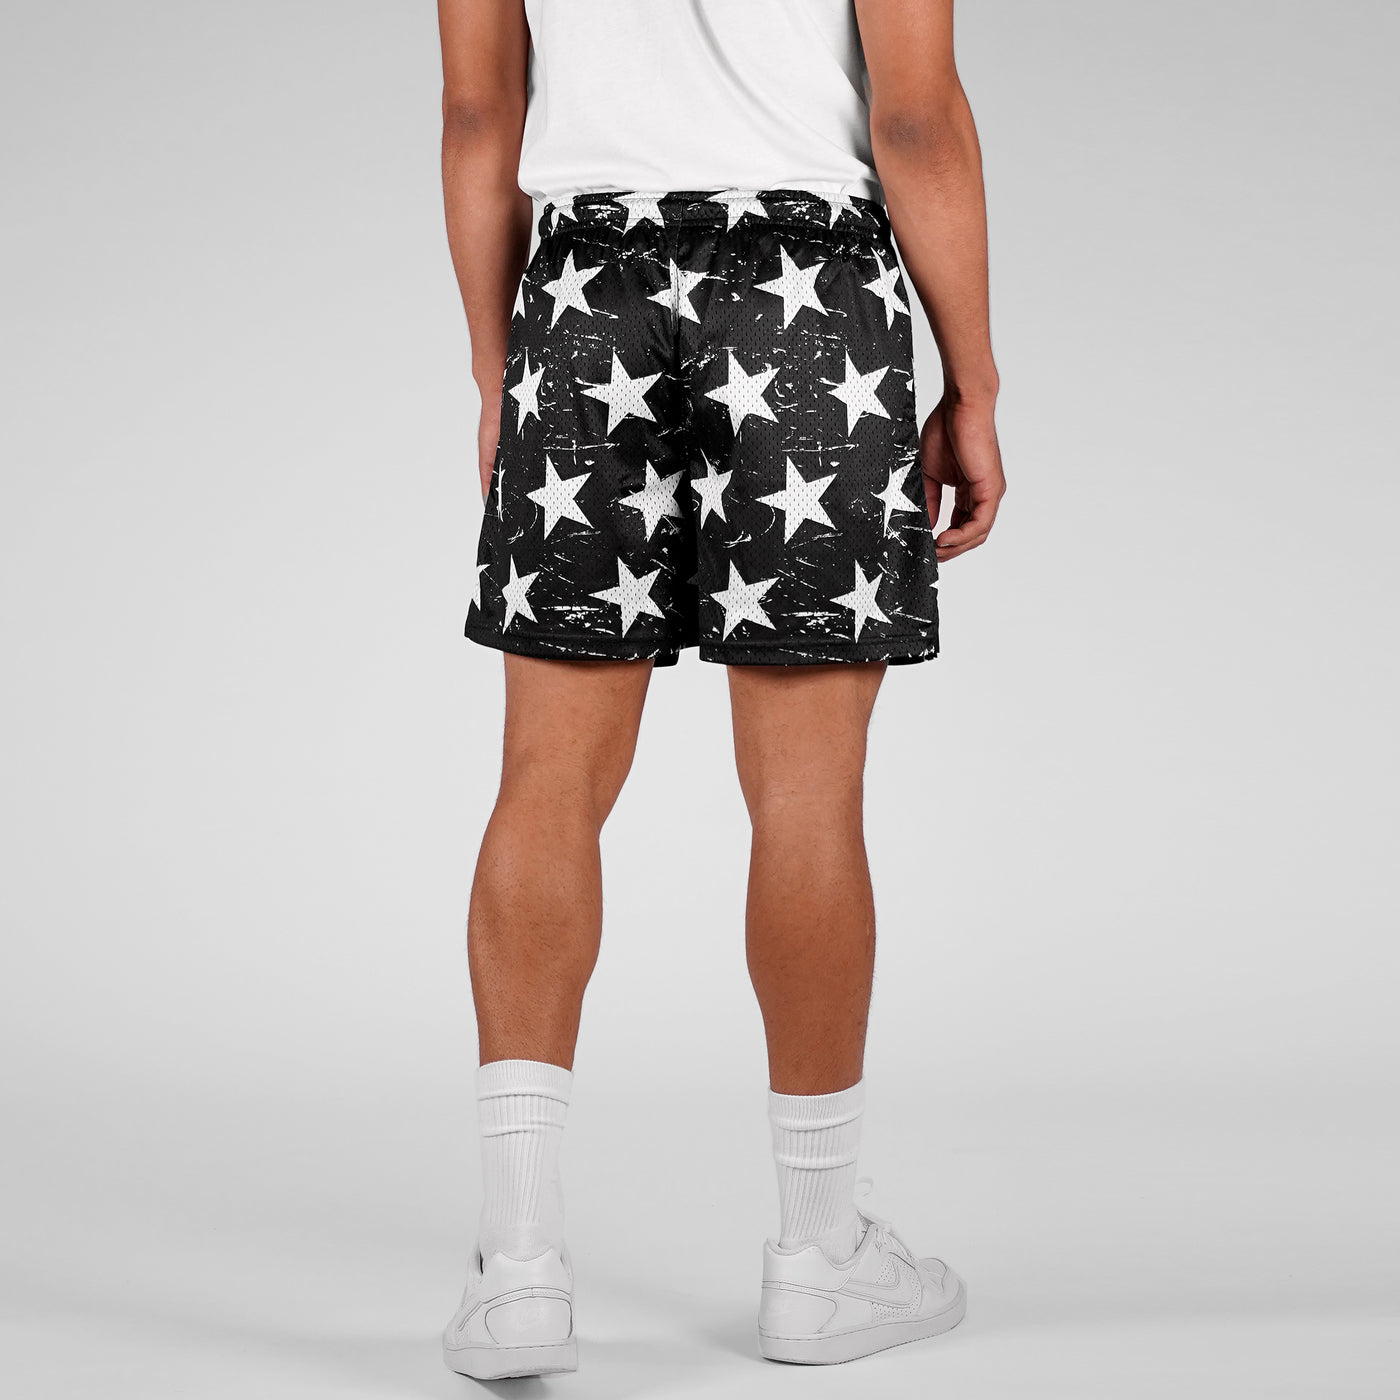 Classic Black White Stars Shorts - 7"